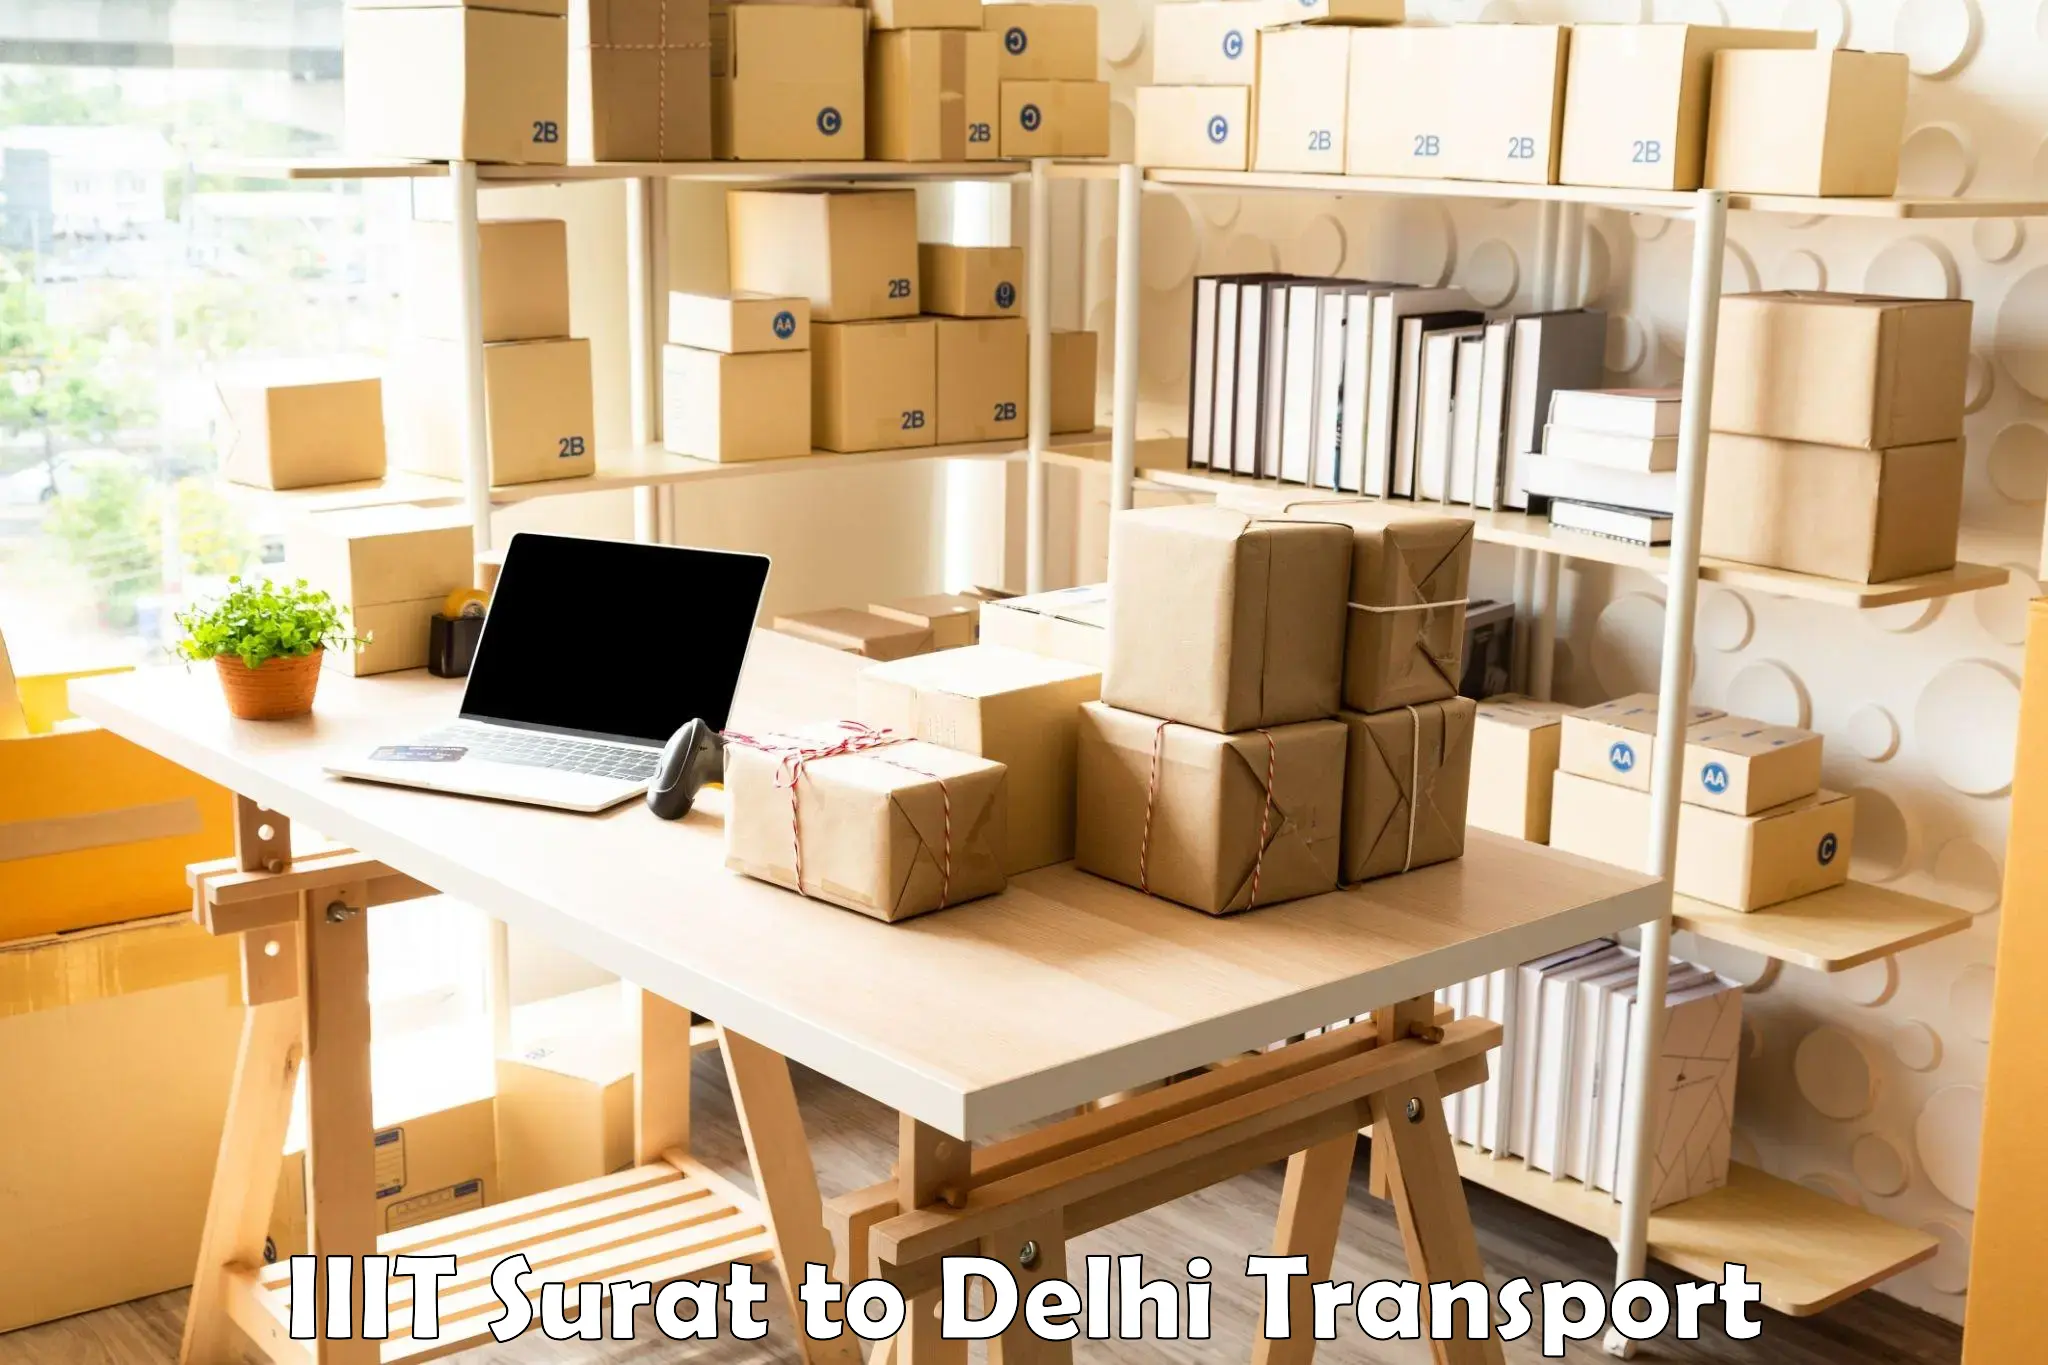 Parcel transport services in IIIT Surat to Delhi